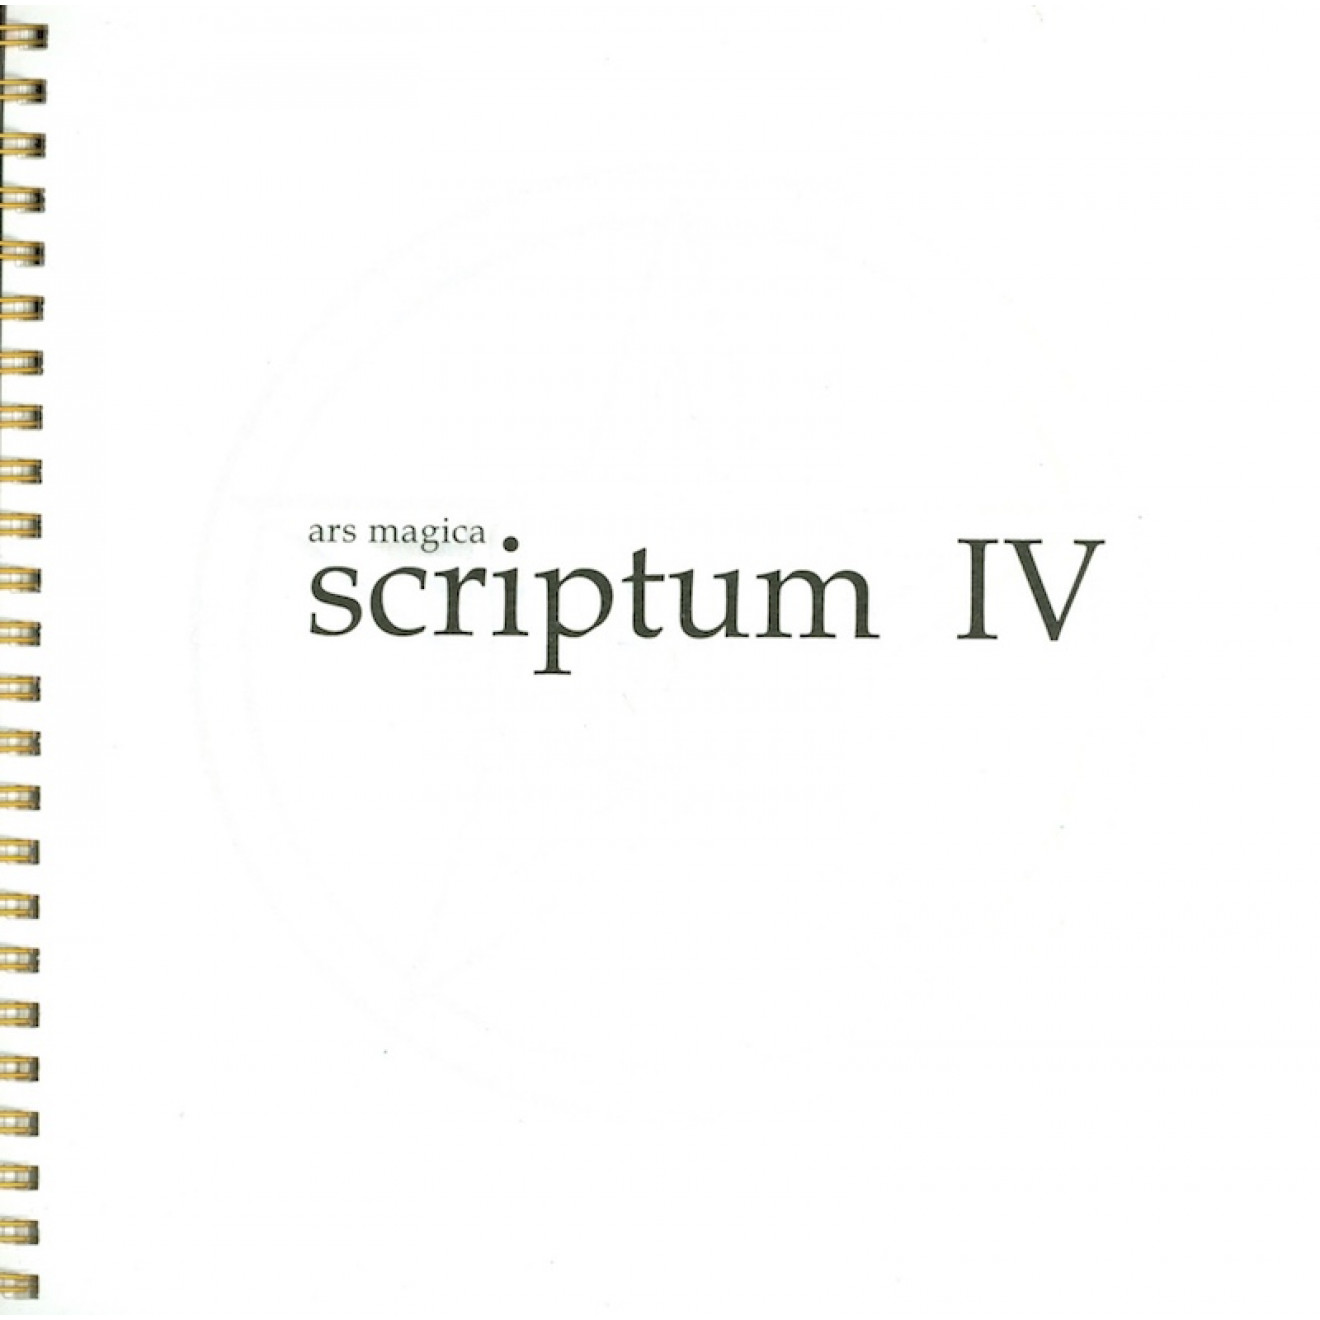 scriptum IV